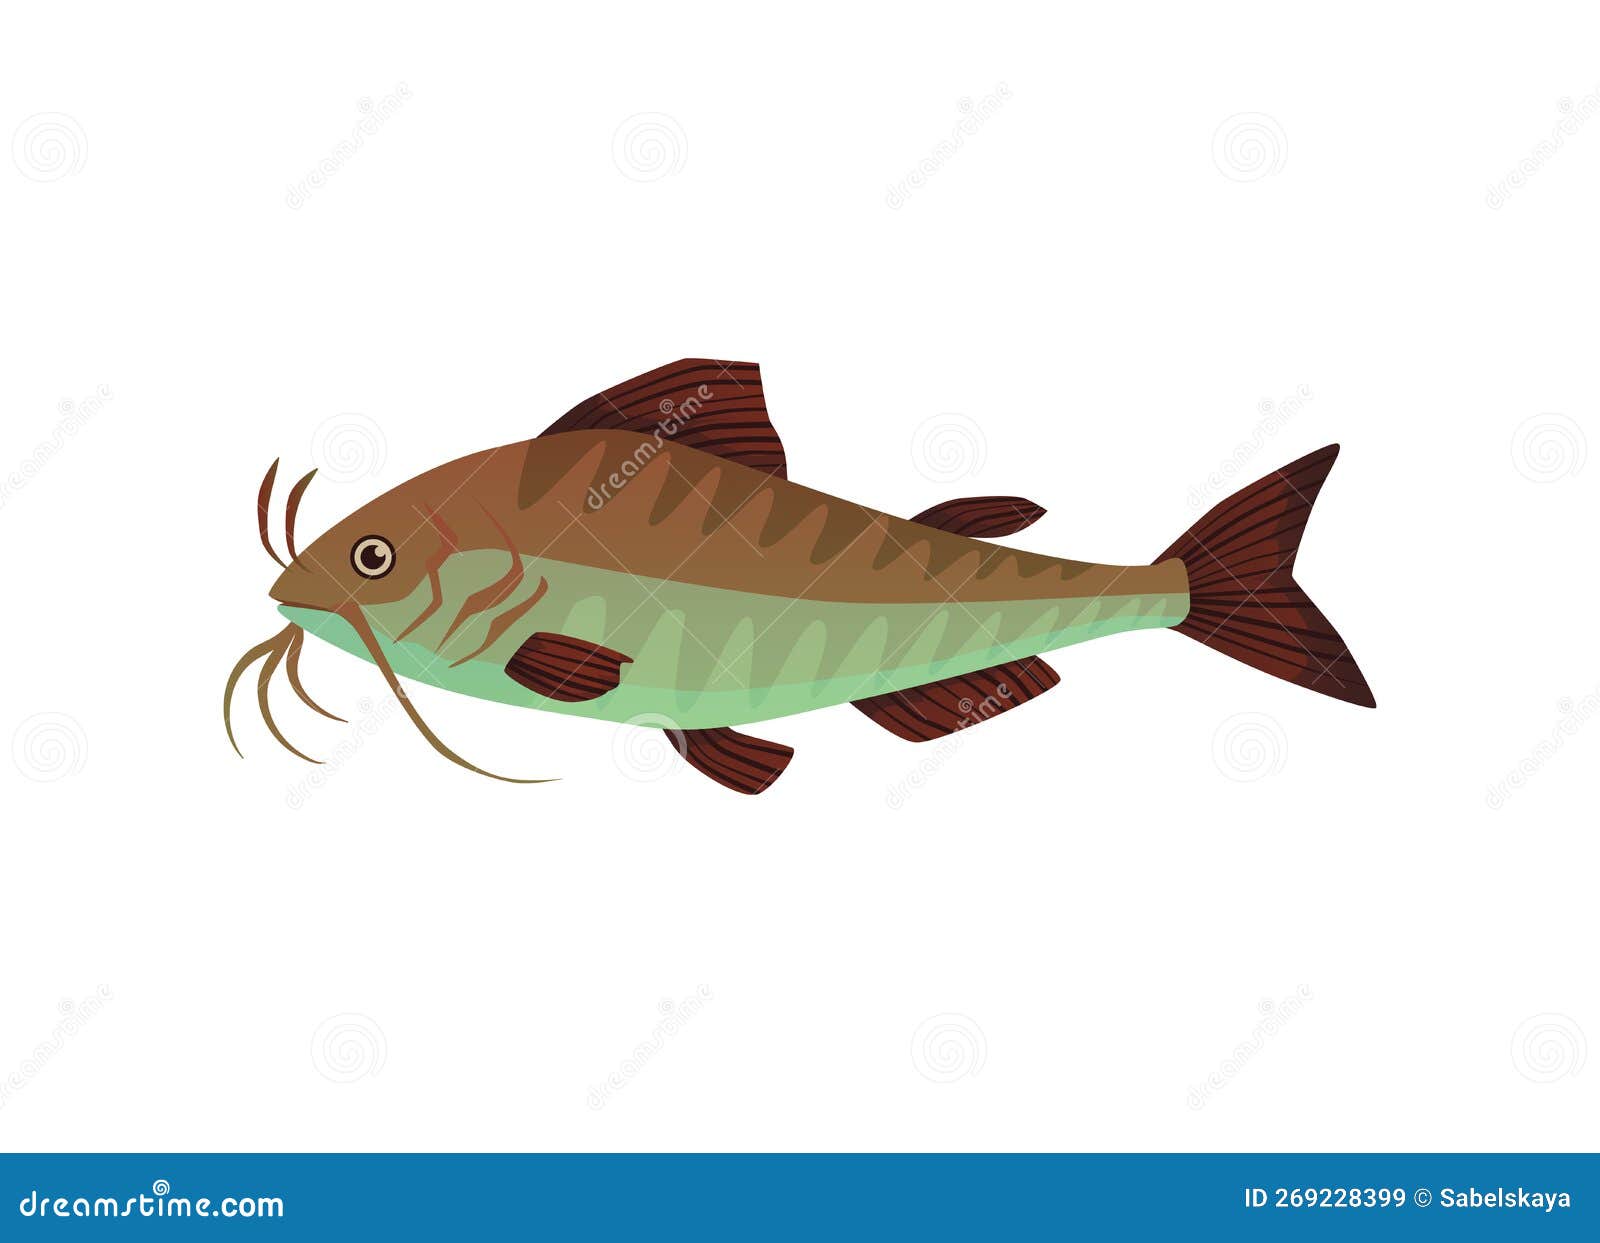 Bullhead Fish Stock Illustrations – 44 Bullhead Fish Stock